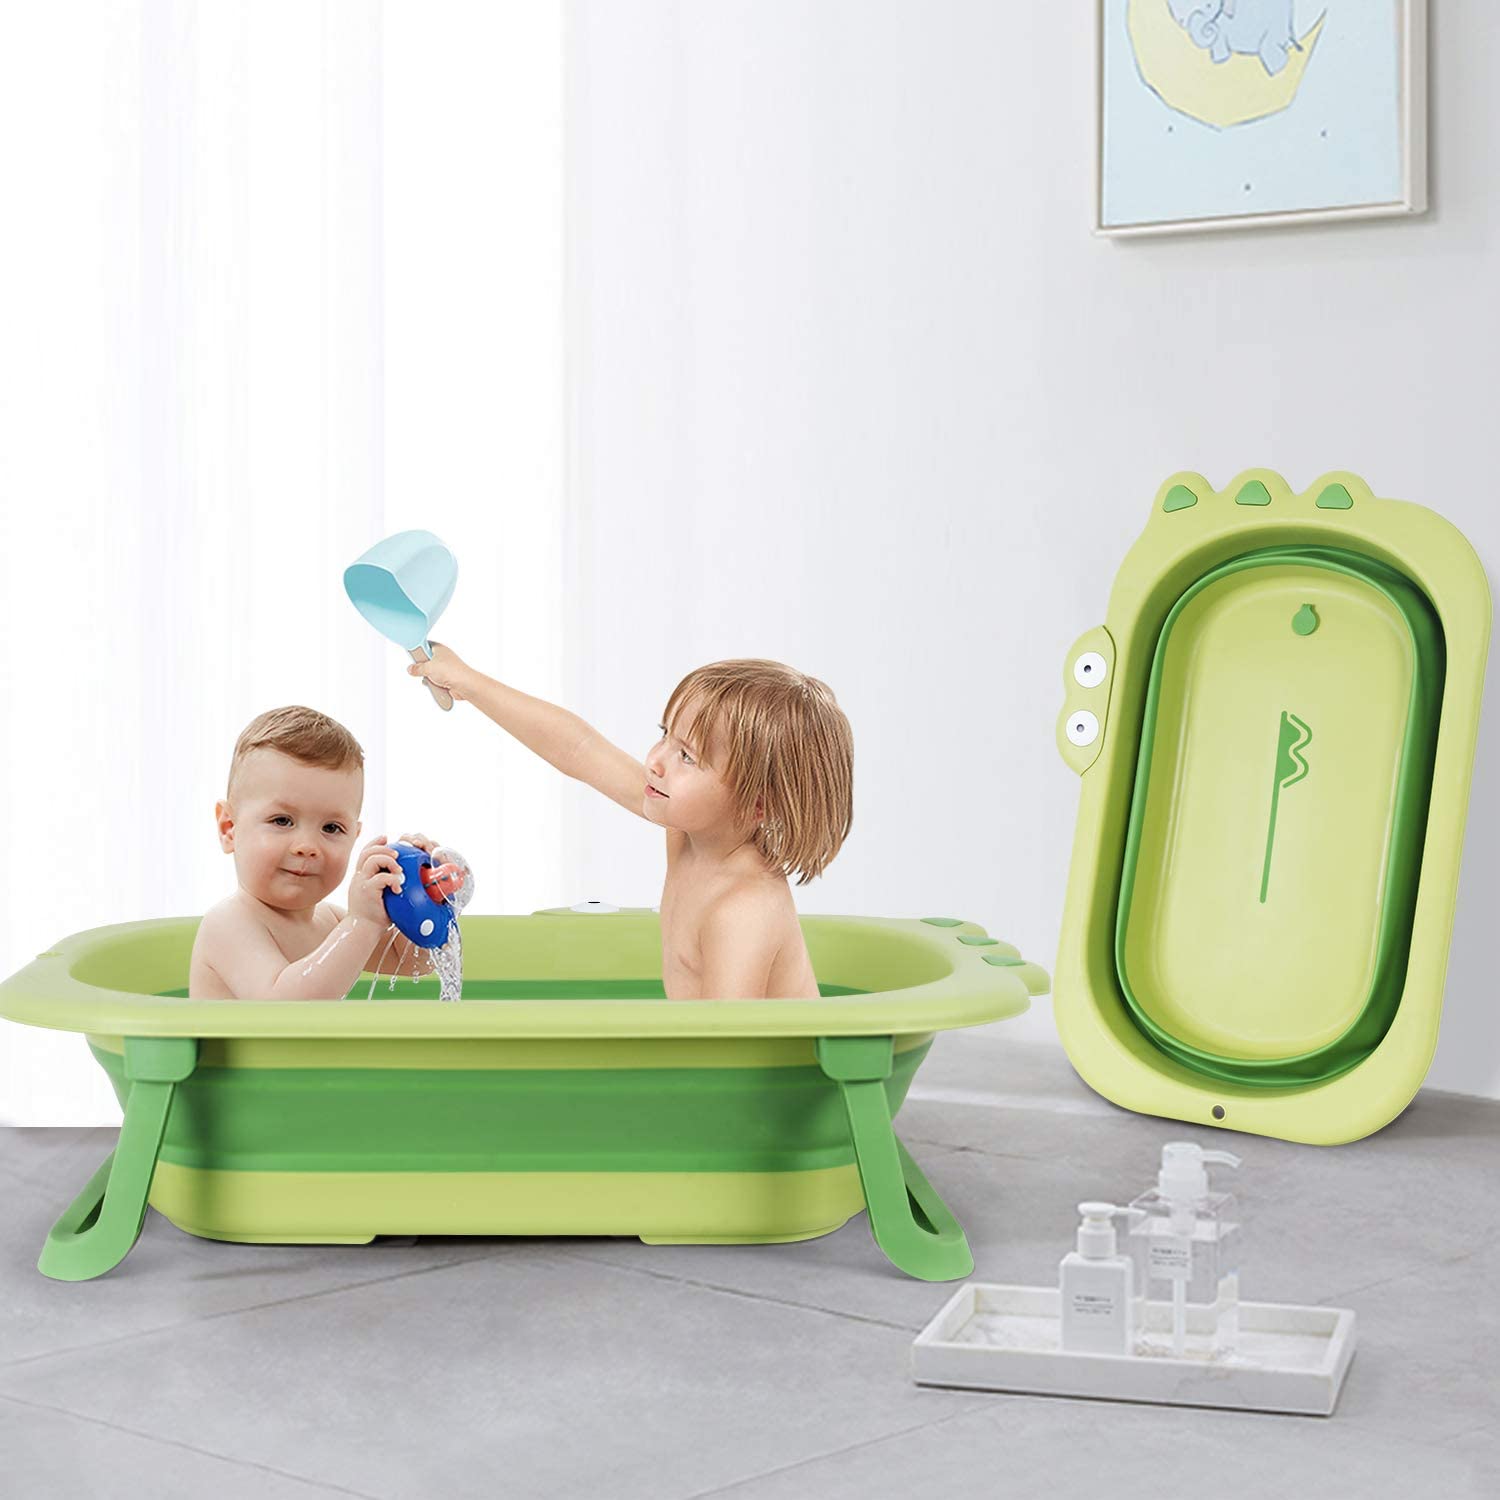 折りたたみ式 赤ちゃんお風呂 安全 コンパクト 子供用風呂 赤ちゃん用 収納容易 滑り止め設計 ベビー用浴槽